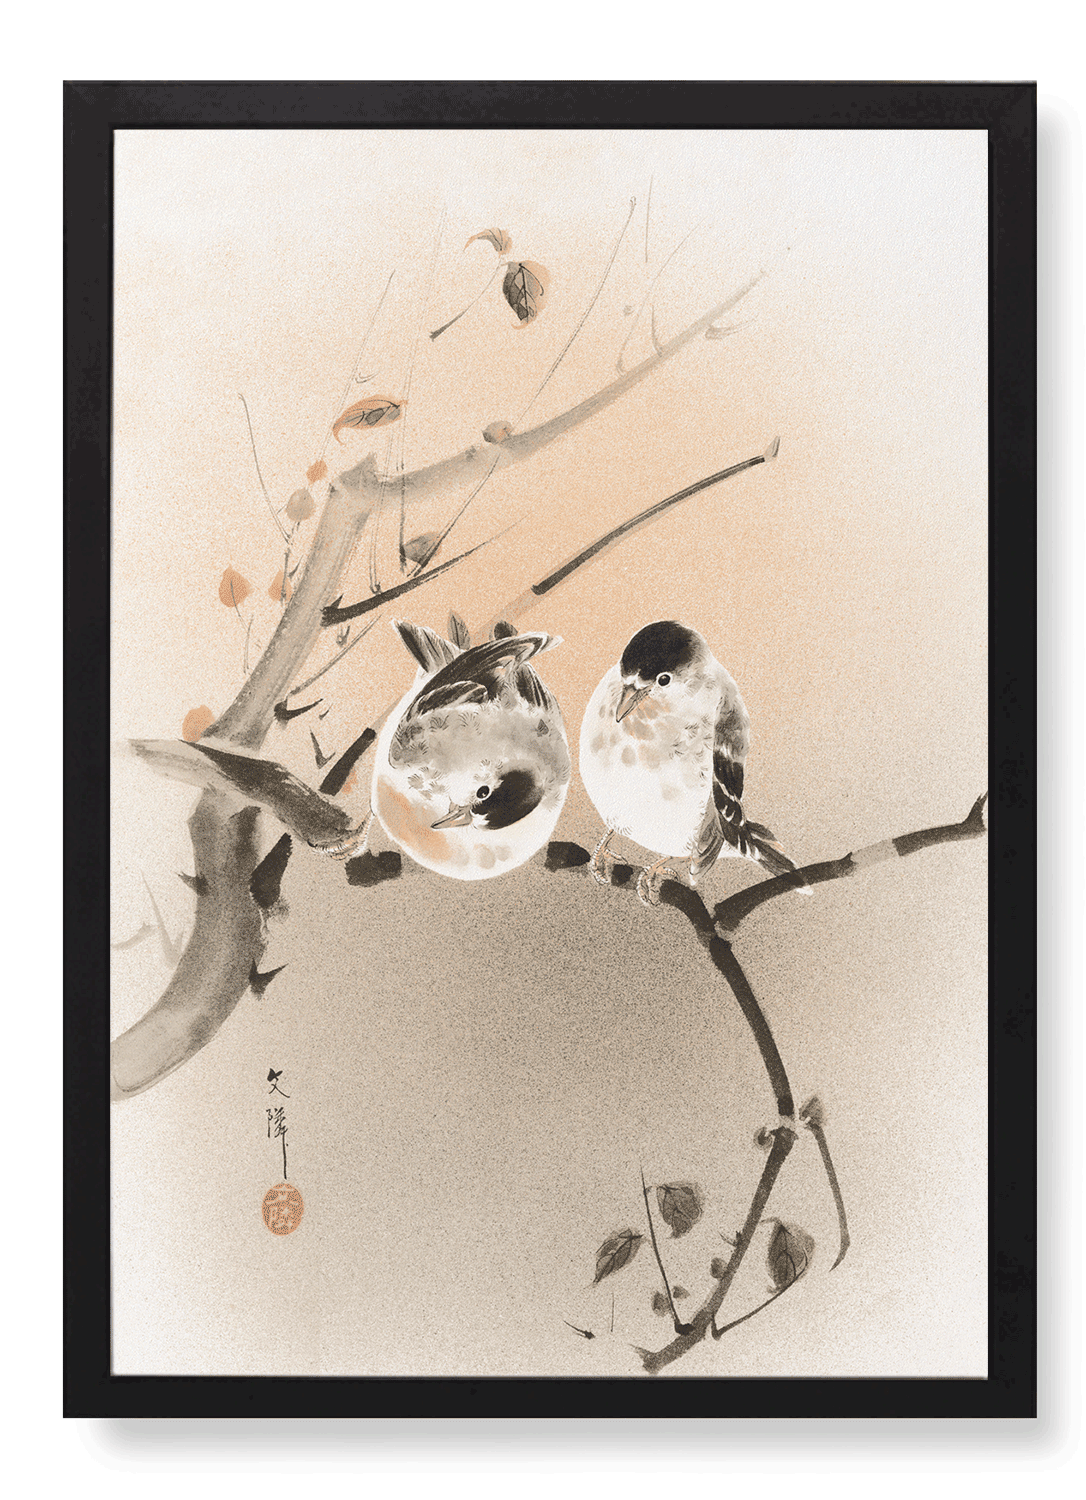 COUPLE OF BIRDS (C.1890)